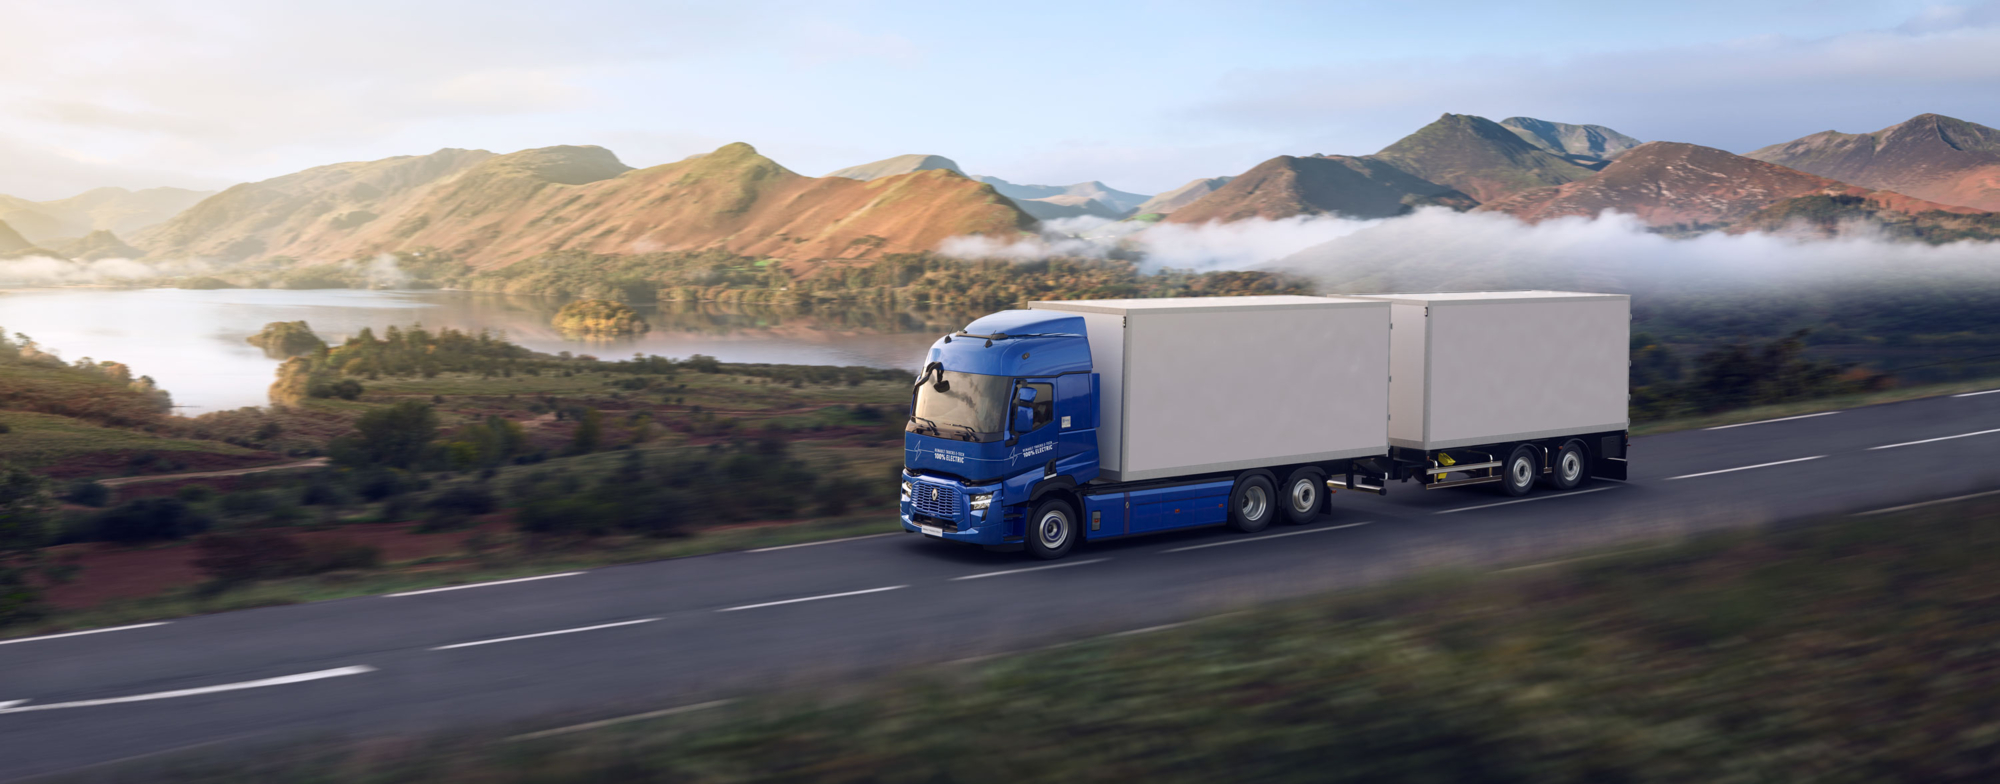 Bluekens-Truck-en-Bus-Renault-Trucks-Digitaliseert-Cabine-Interieur-Nieuwe-Veiligheidsvoorzieningen-3